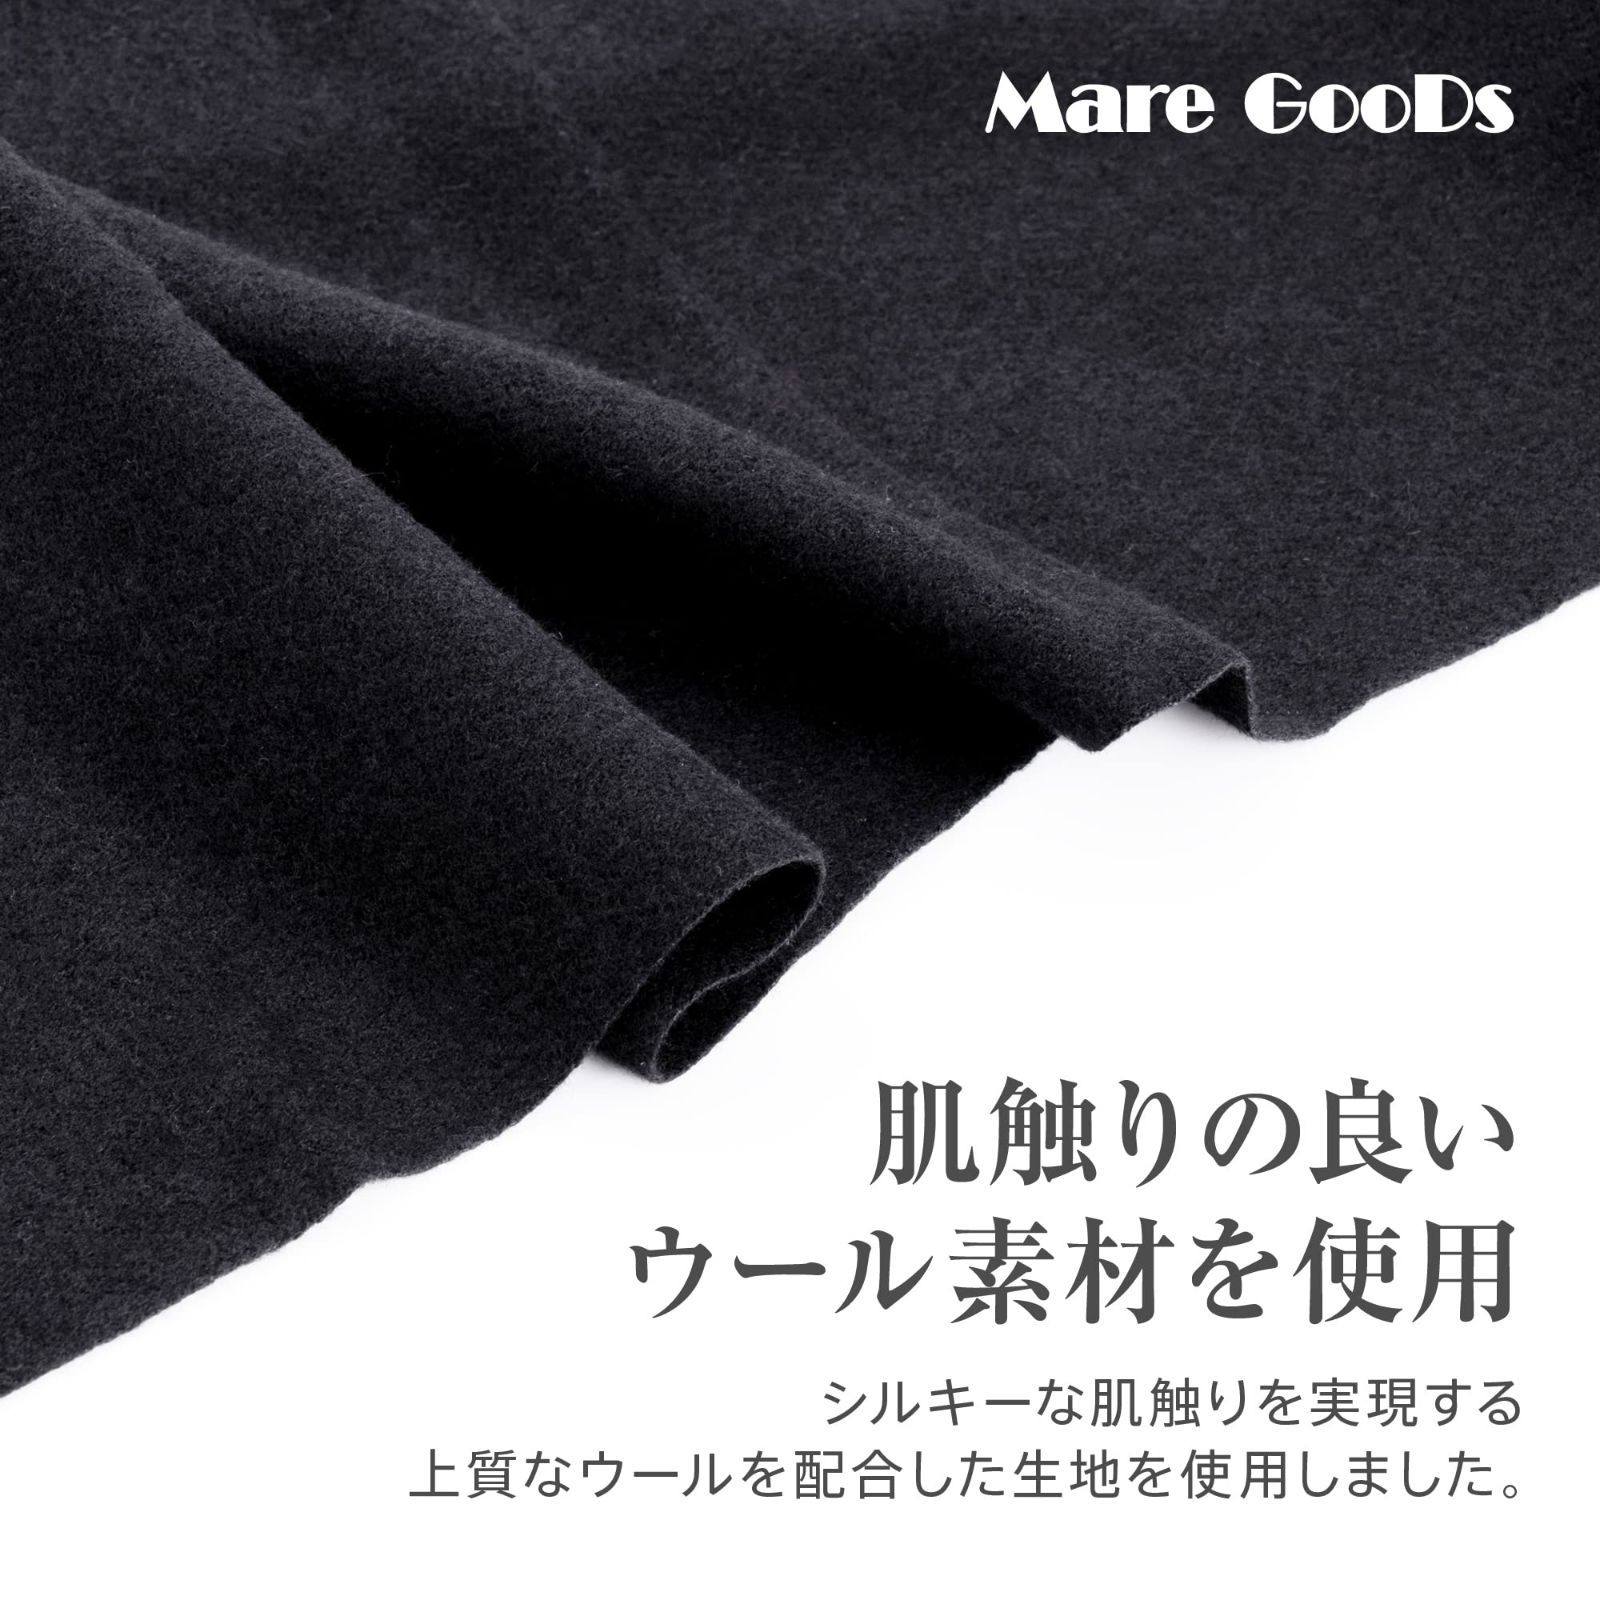 【色: ブラック】Mare GooDs マフラー レディース ストール 大判 ウ